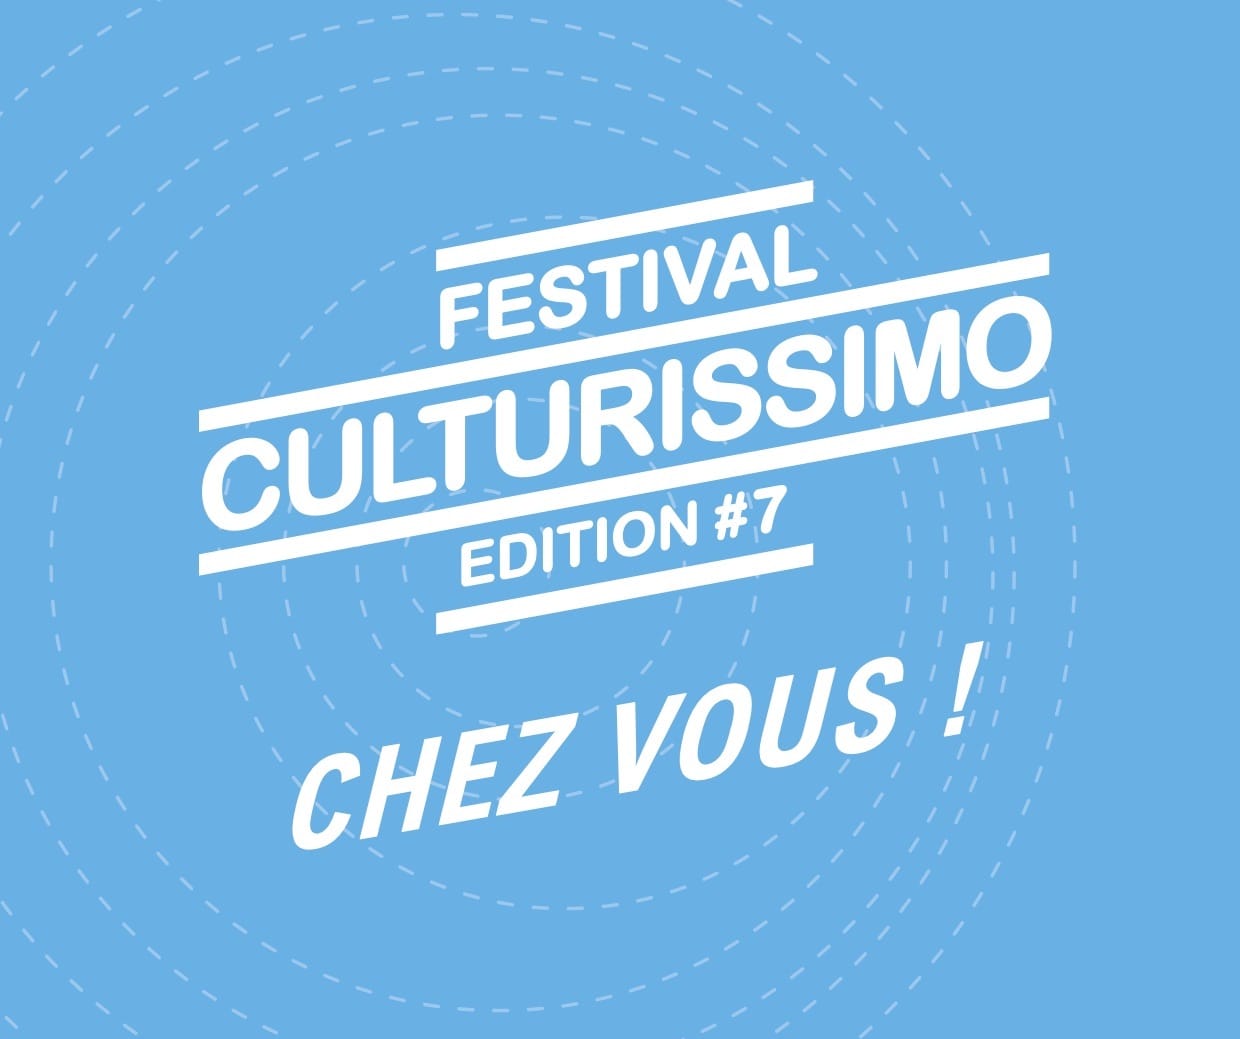 Festival Culturissimo 2020 affiche musique lecture